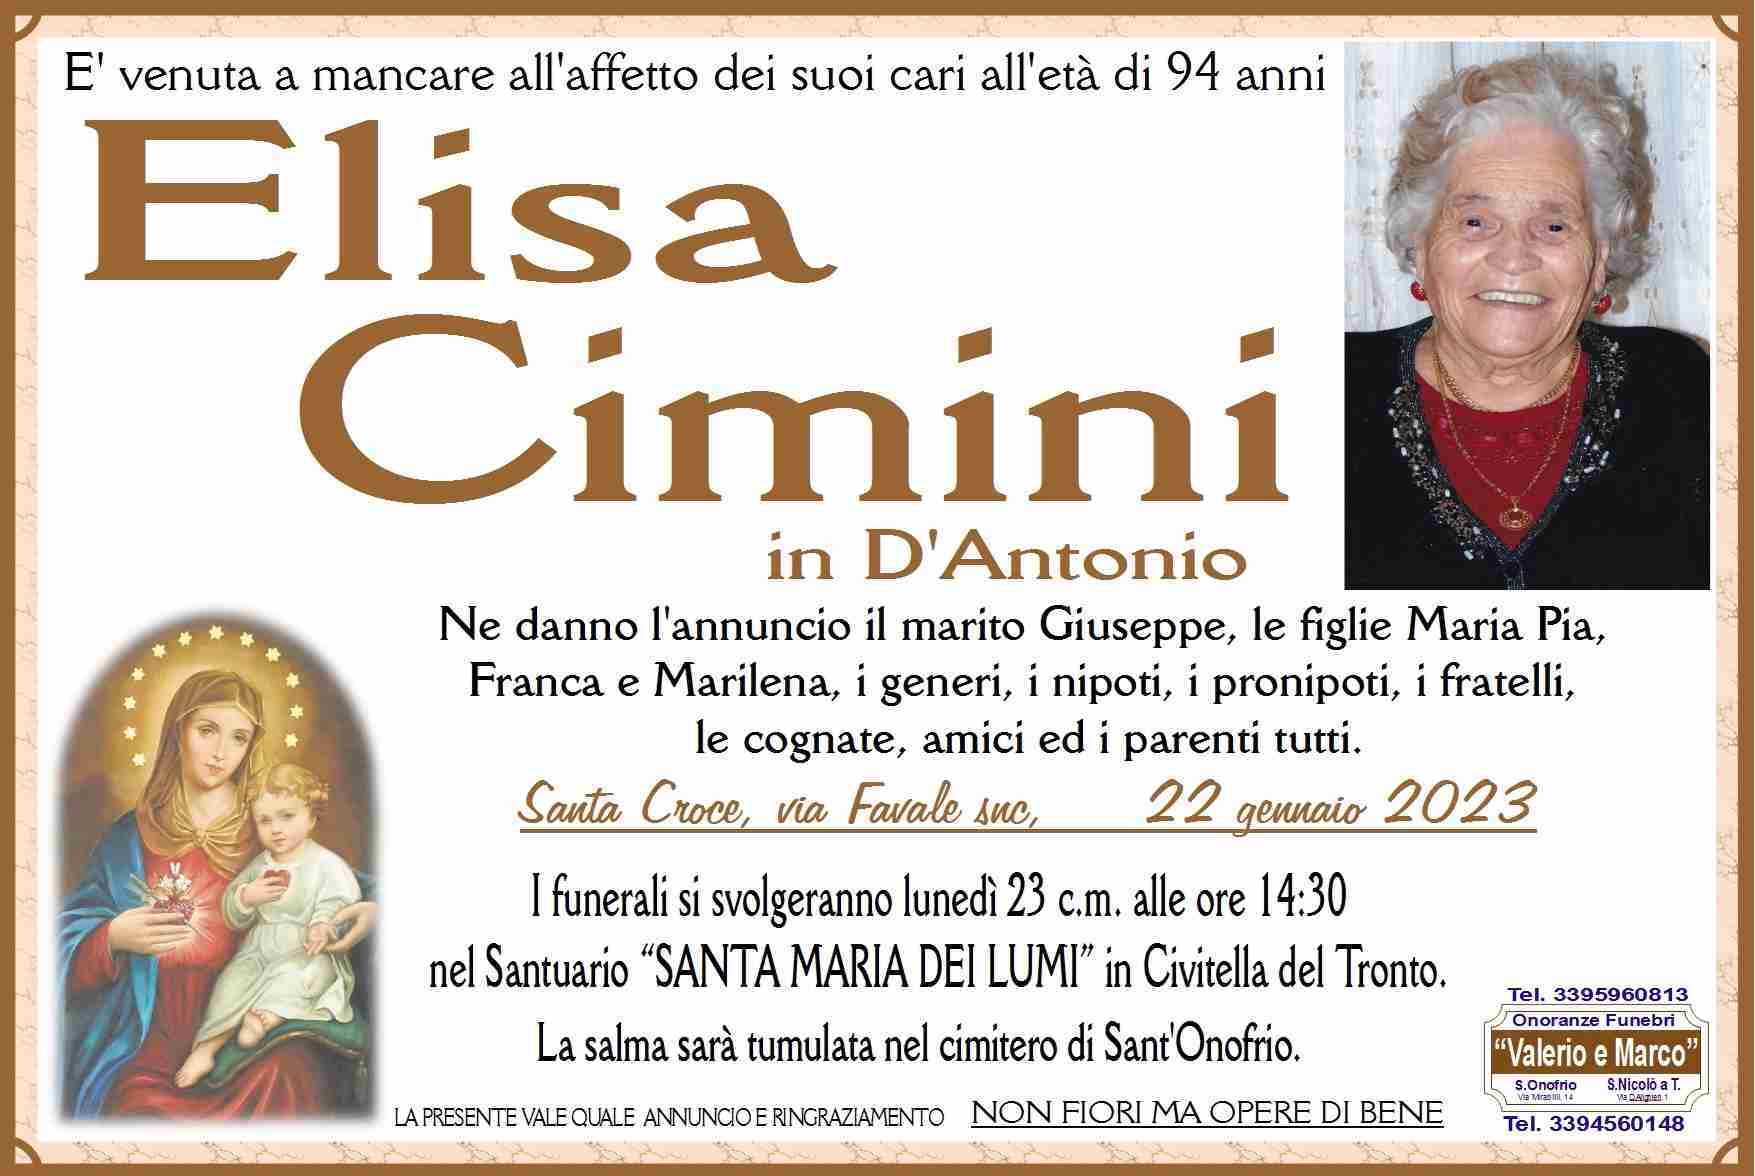 Elisa Cimini